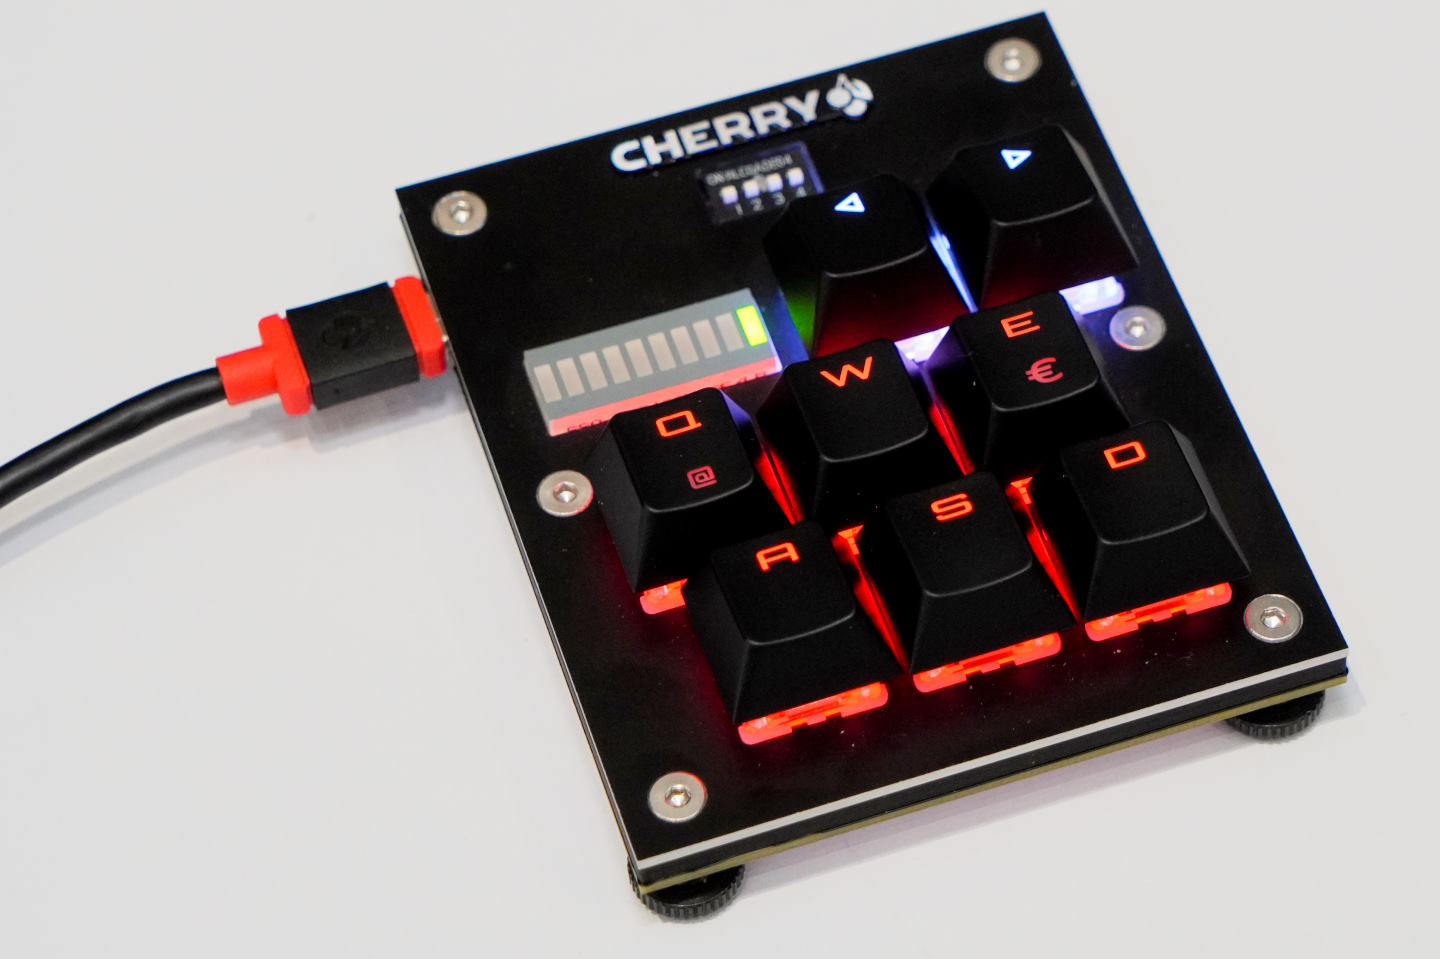 Cherry也在會場以特製鍵盤展示MX Multipoint機械軸類比控制的特色。